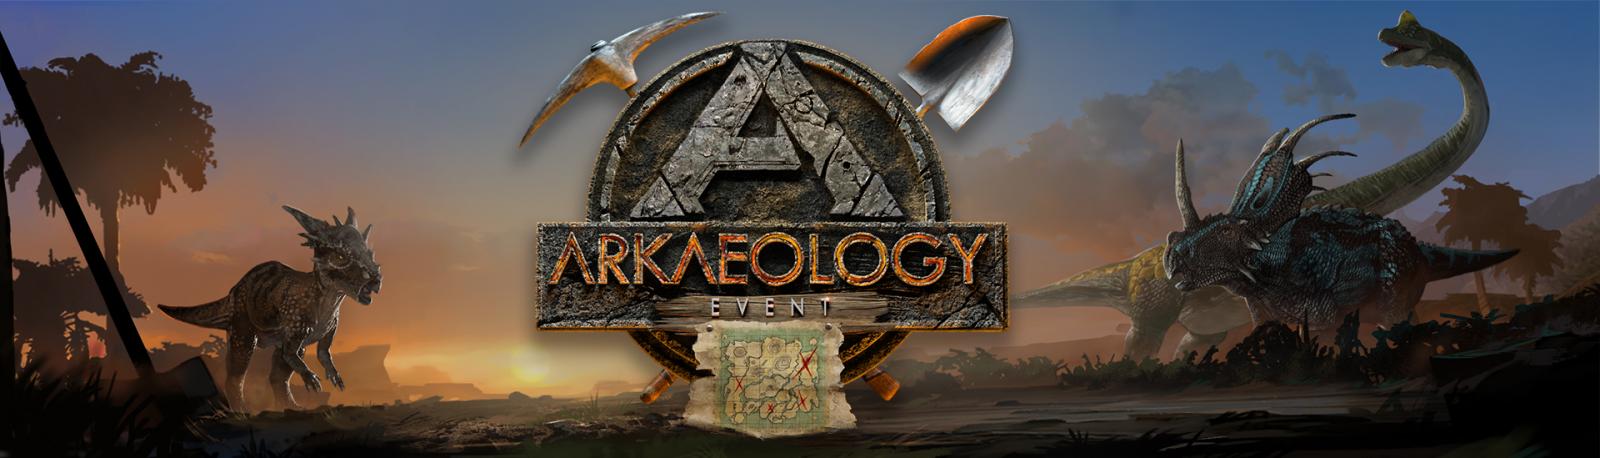 ARKaeology Event